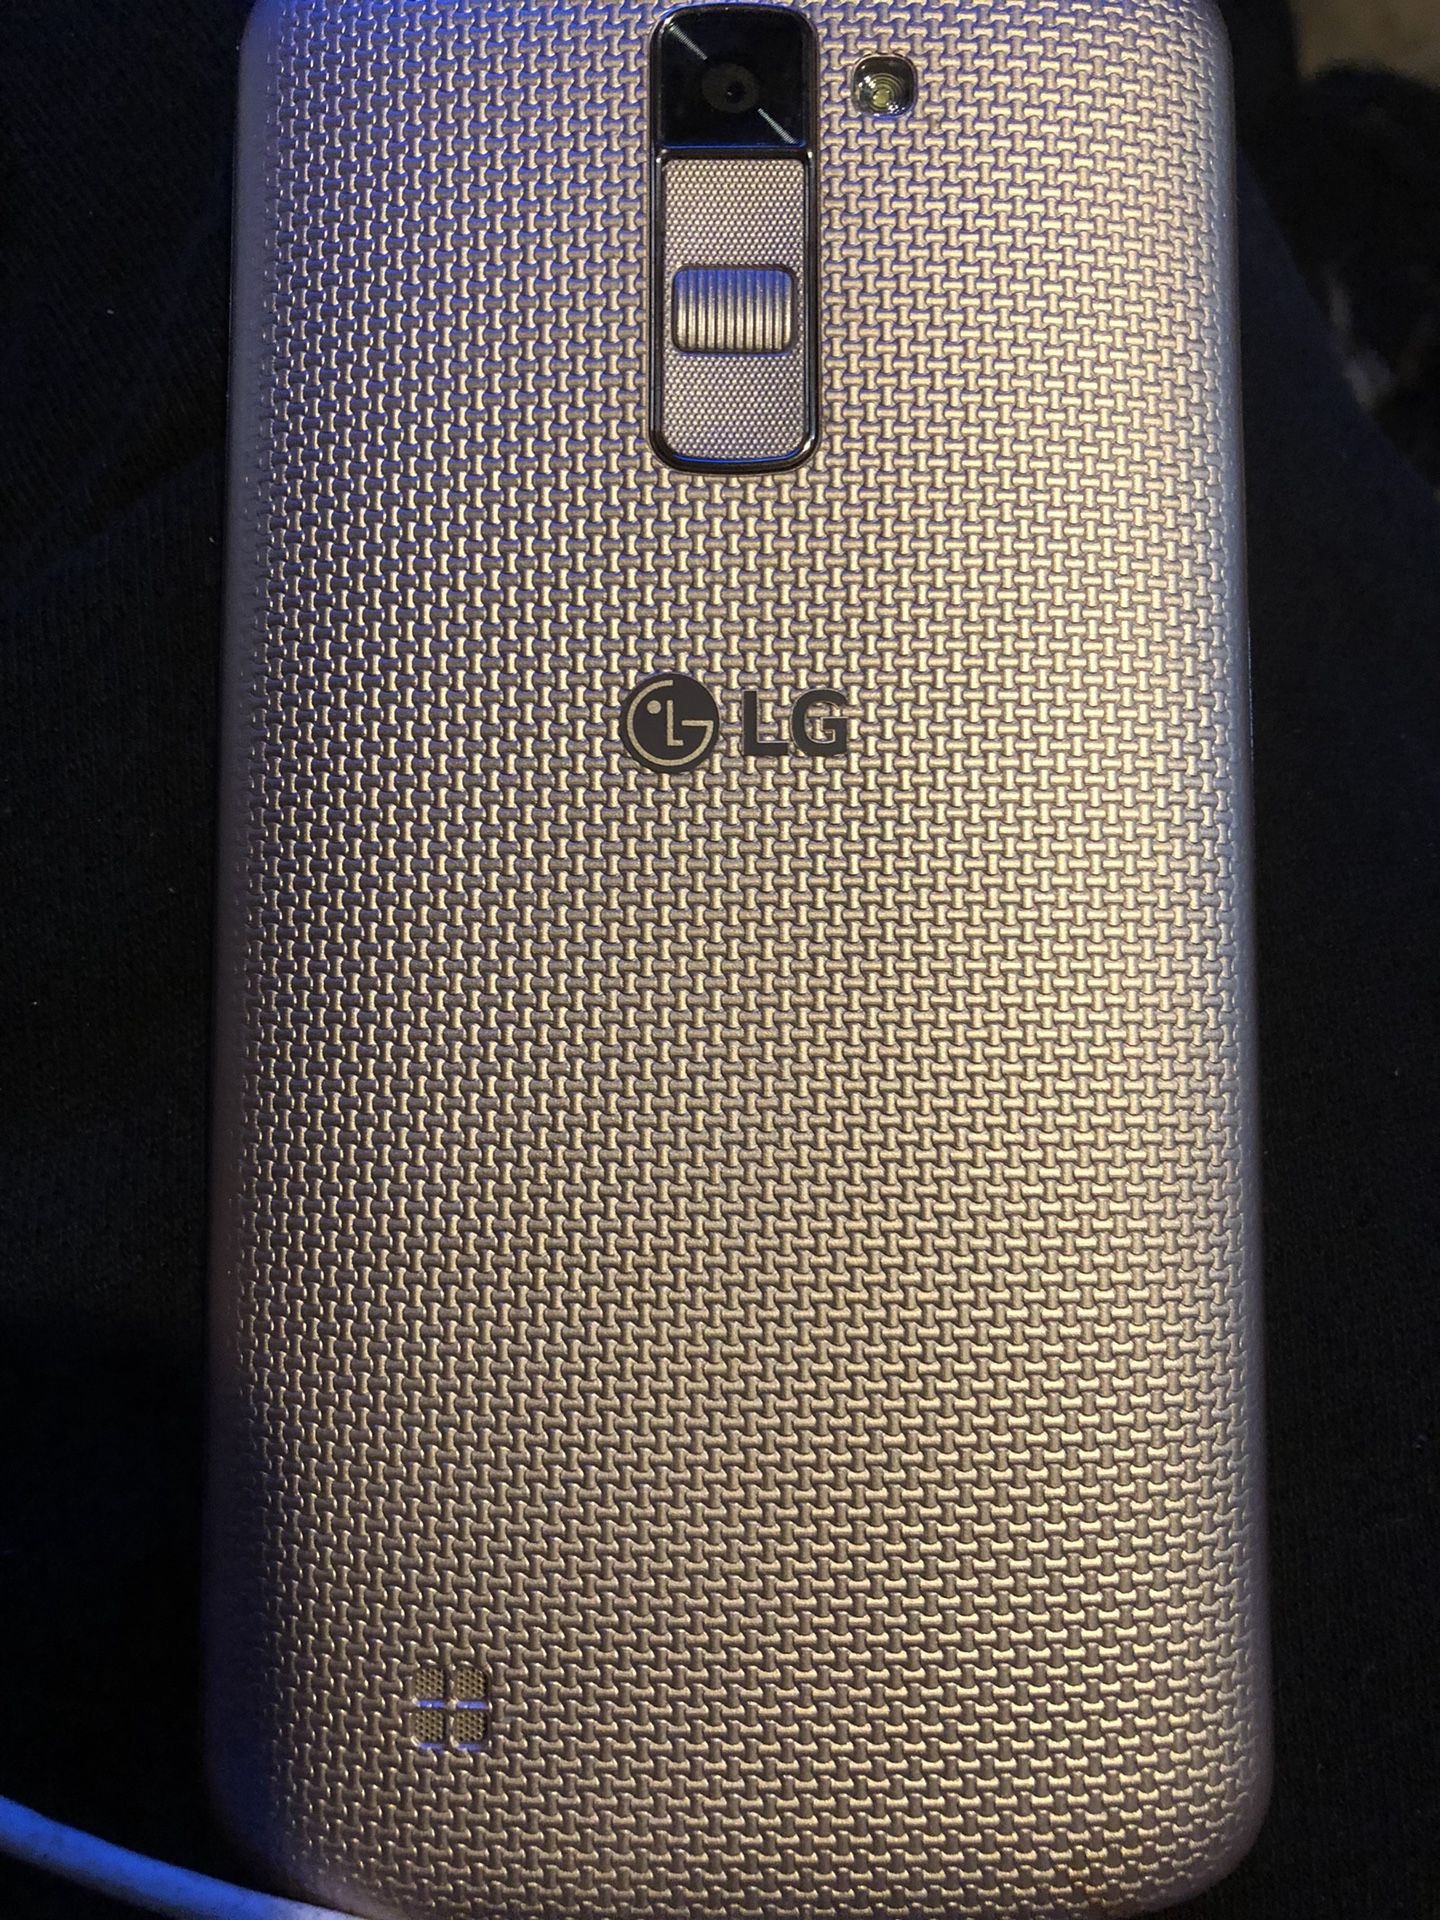 LG smartphone